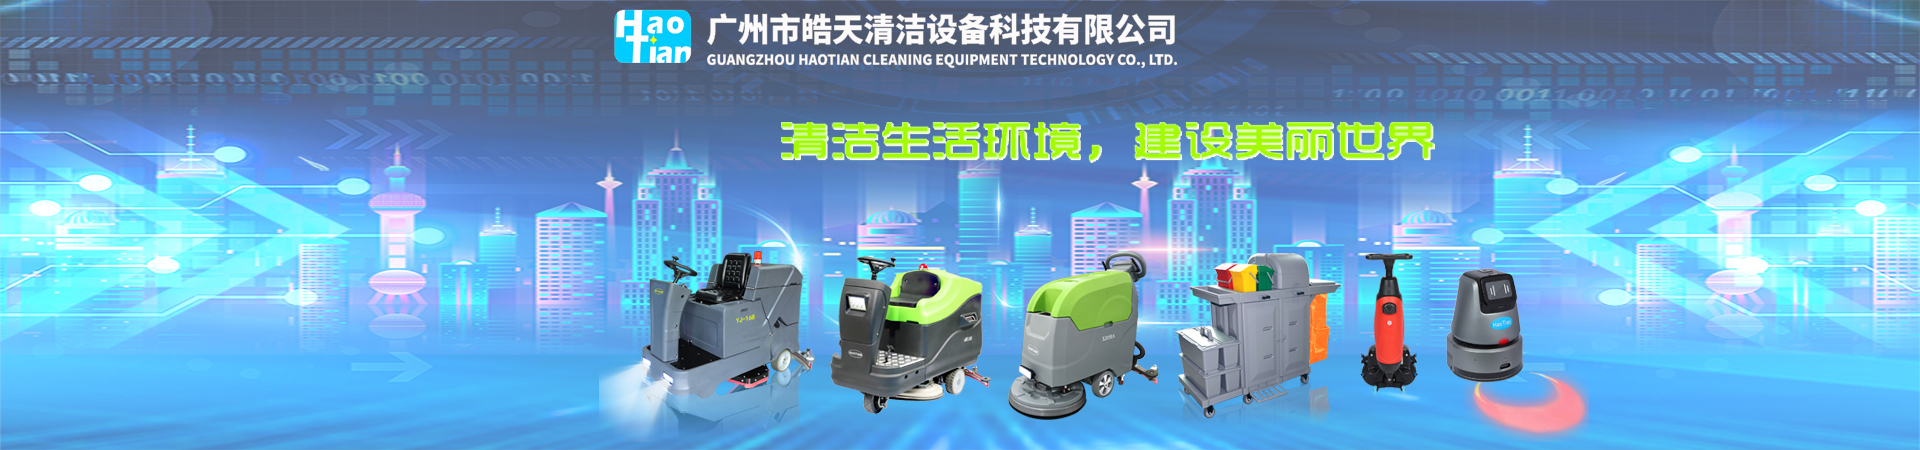 广州市皓天清洁设备科技有限公司